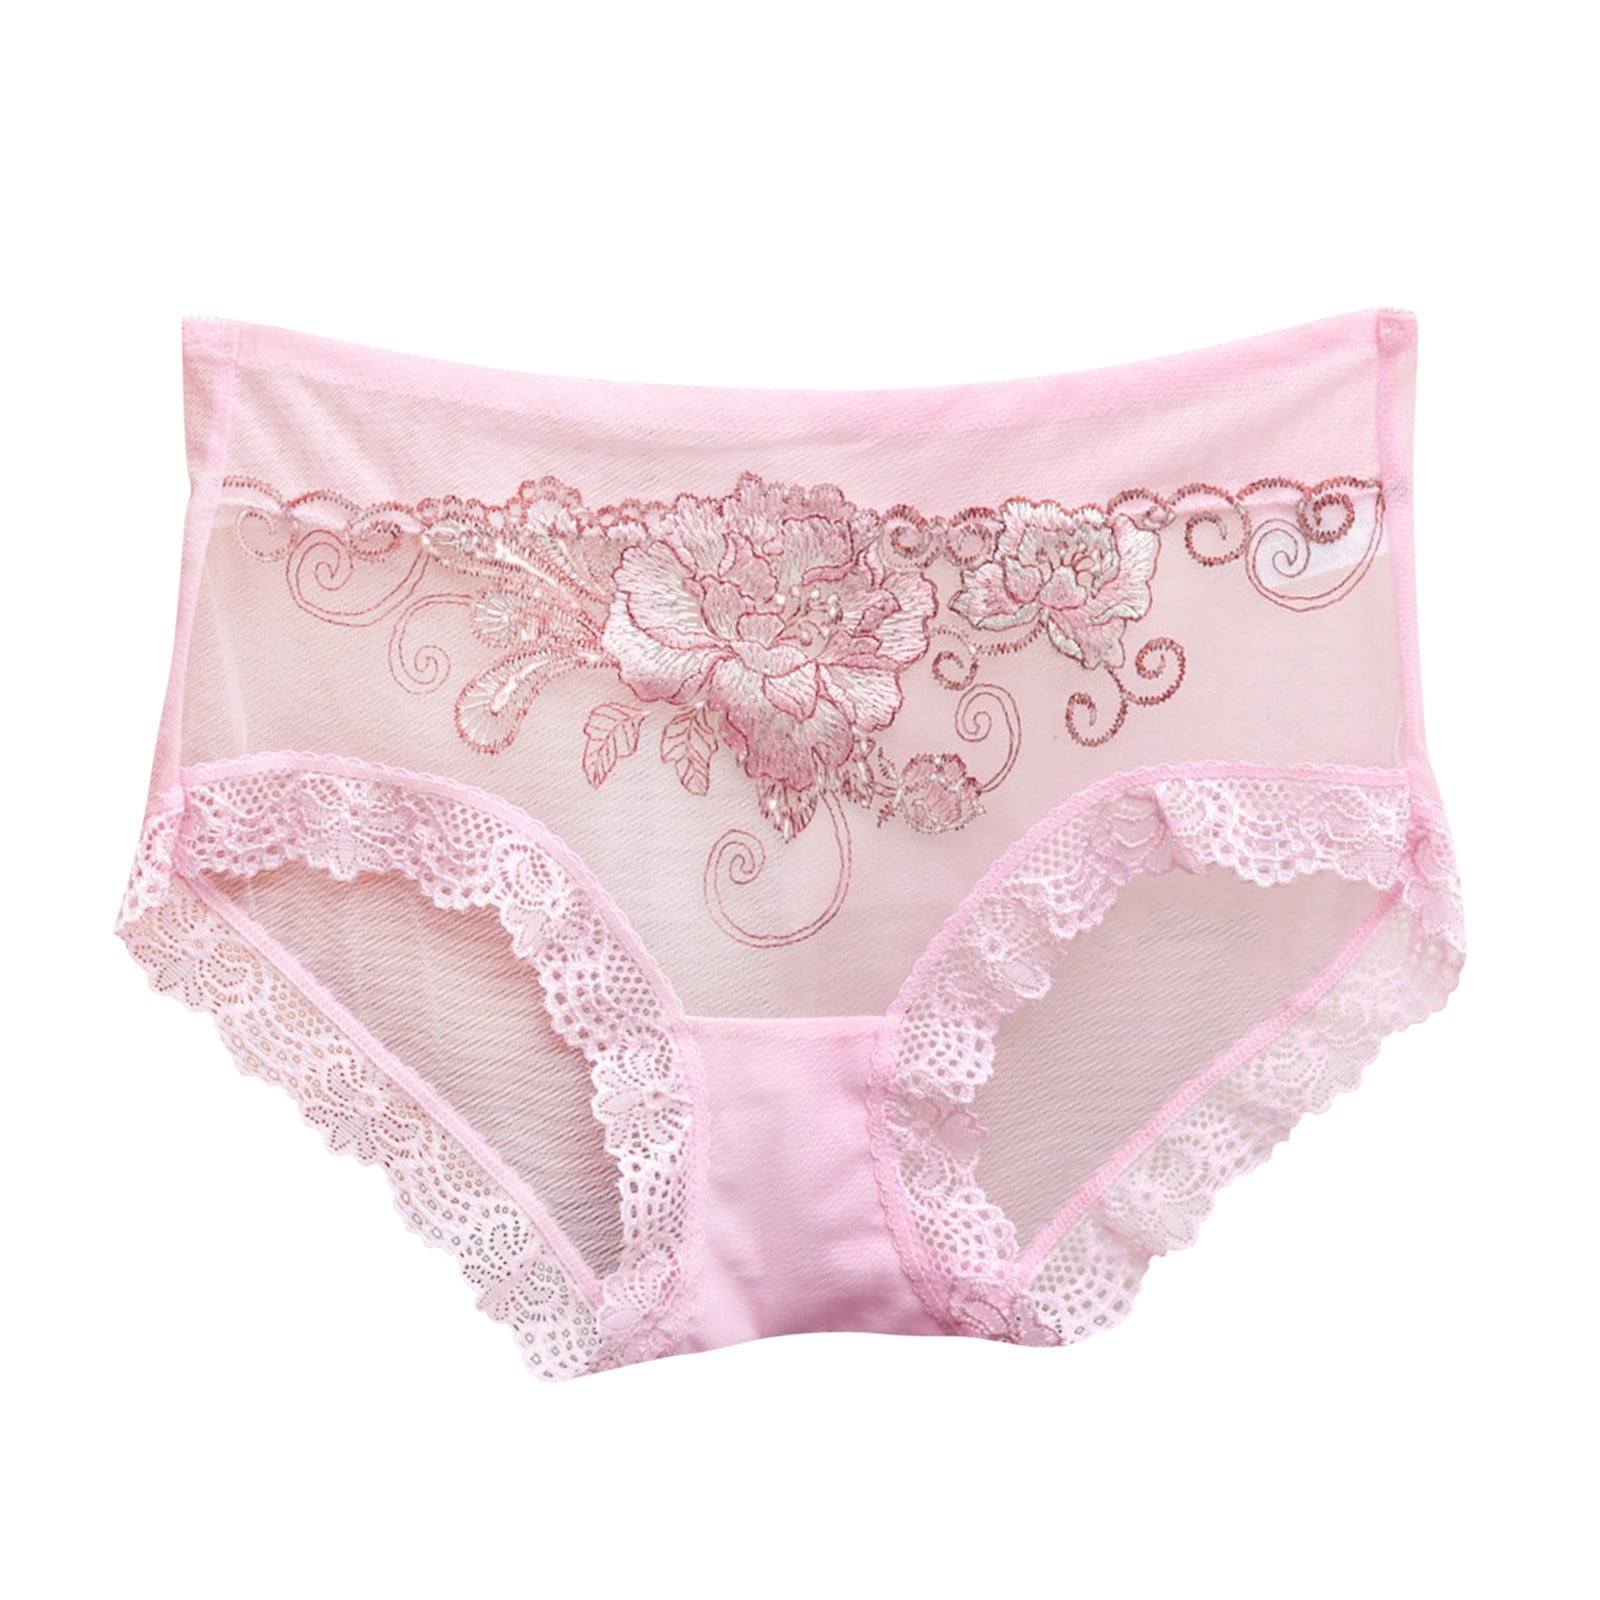 Sayhi Panties Women's Underpants Briefs Middle Waist Lace Underwear ...